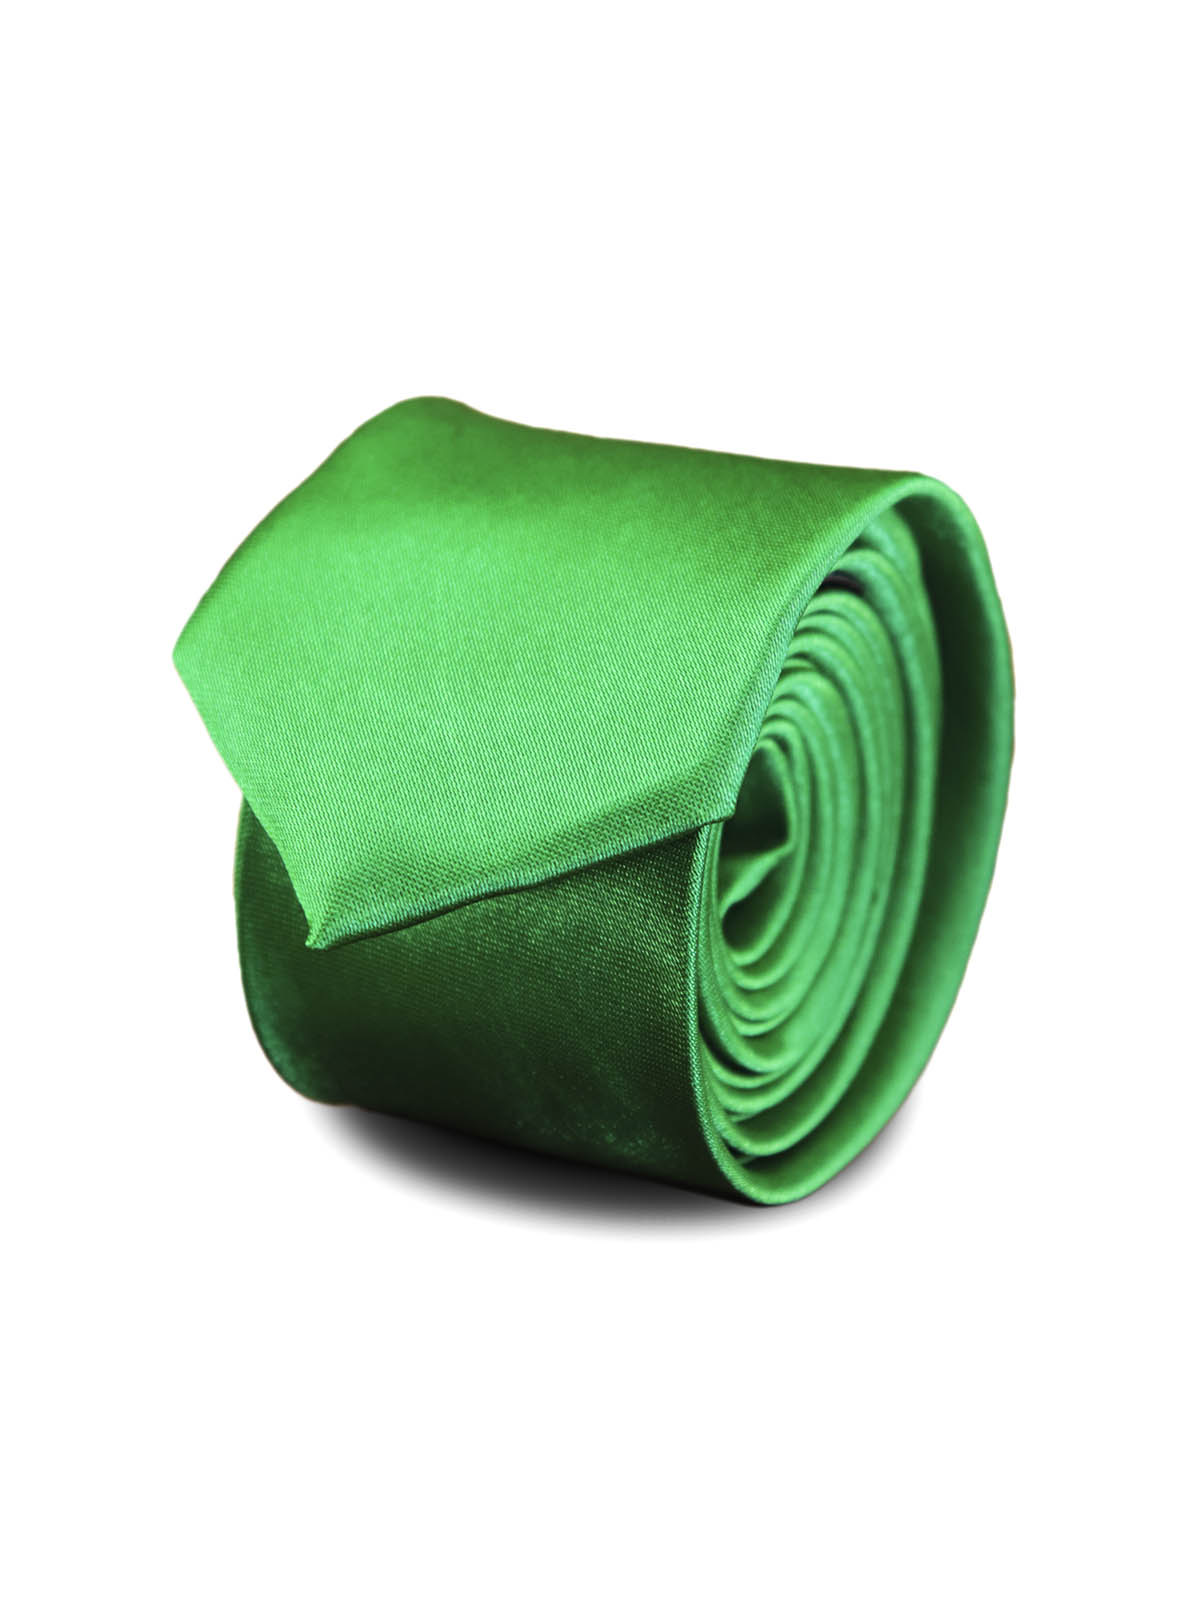 Галстук узкий атласный ярко-зеленый описание: Фасон - Узкий галстук, Материал - Полиэстер, Цвет - зеленый, Размер - 5 см х 141 см, Страна производства - Китай.